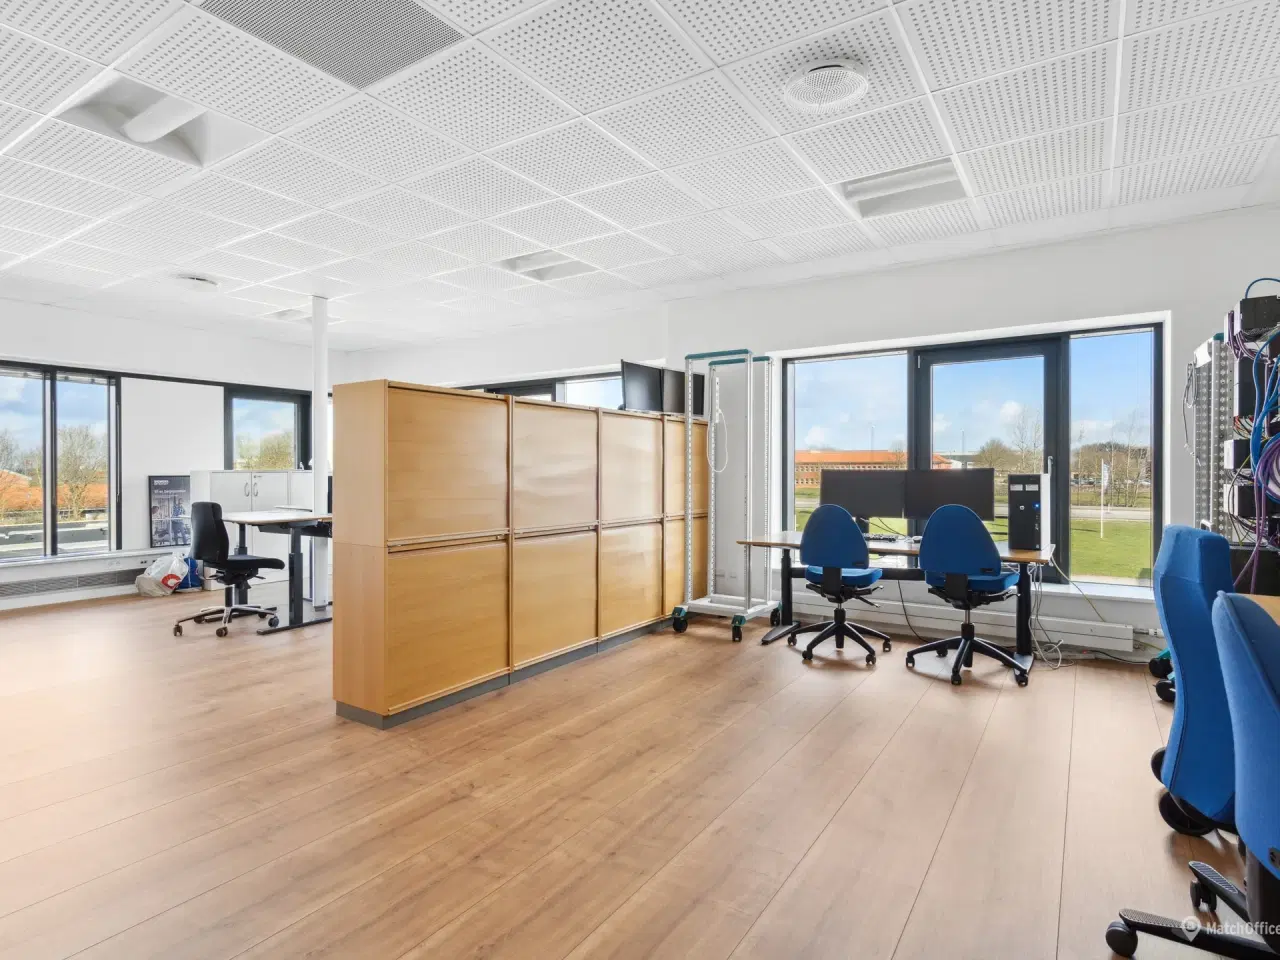 Billede 9 - 342 m² kontor beliggende i meget præsentabel kontorejendom